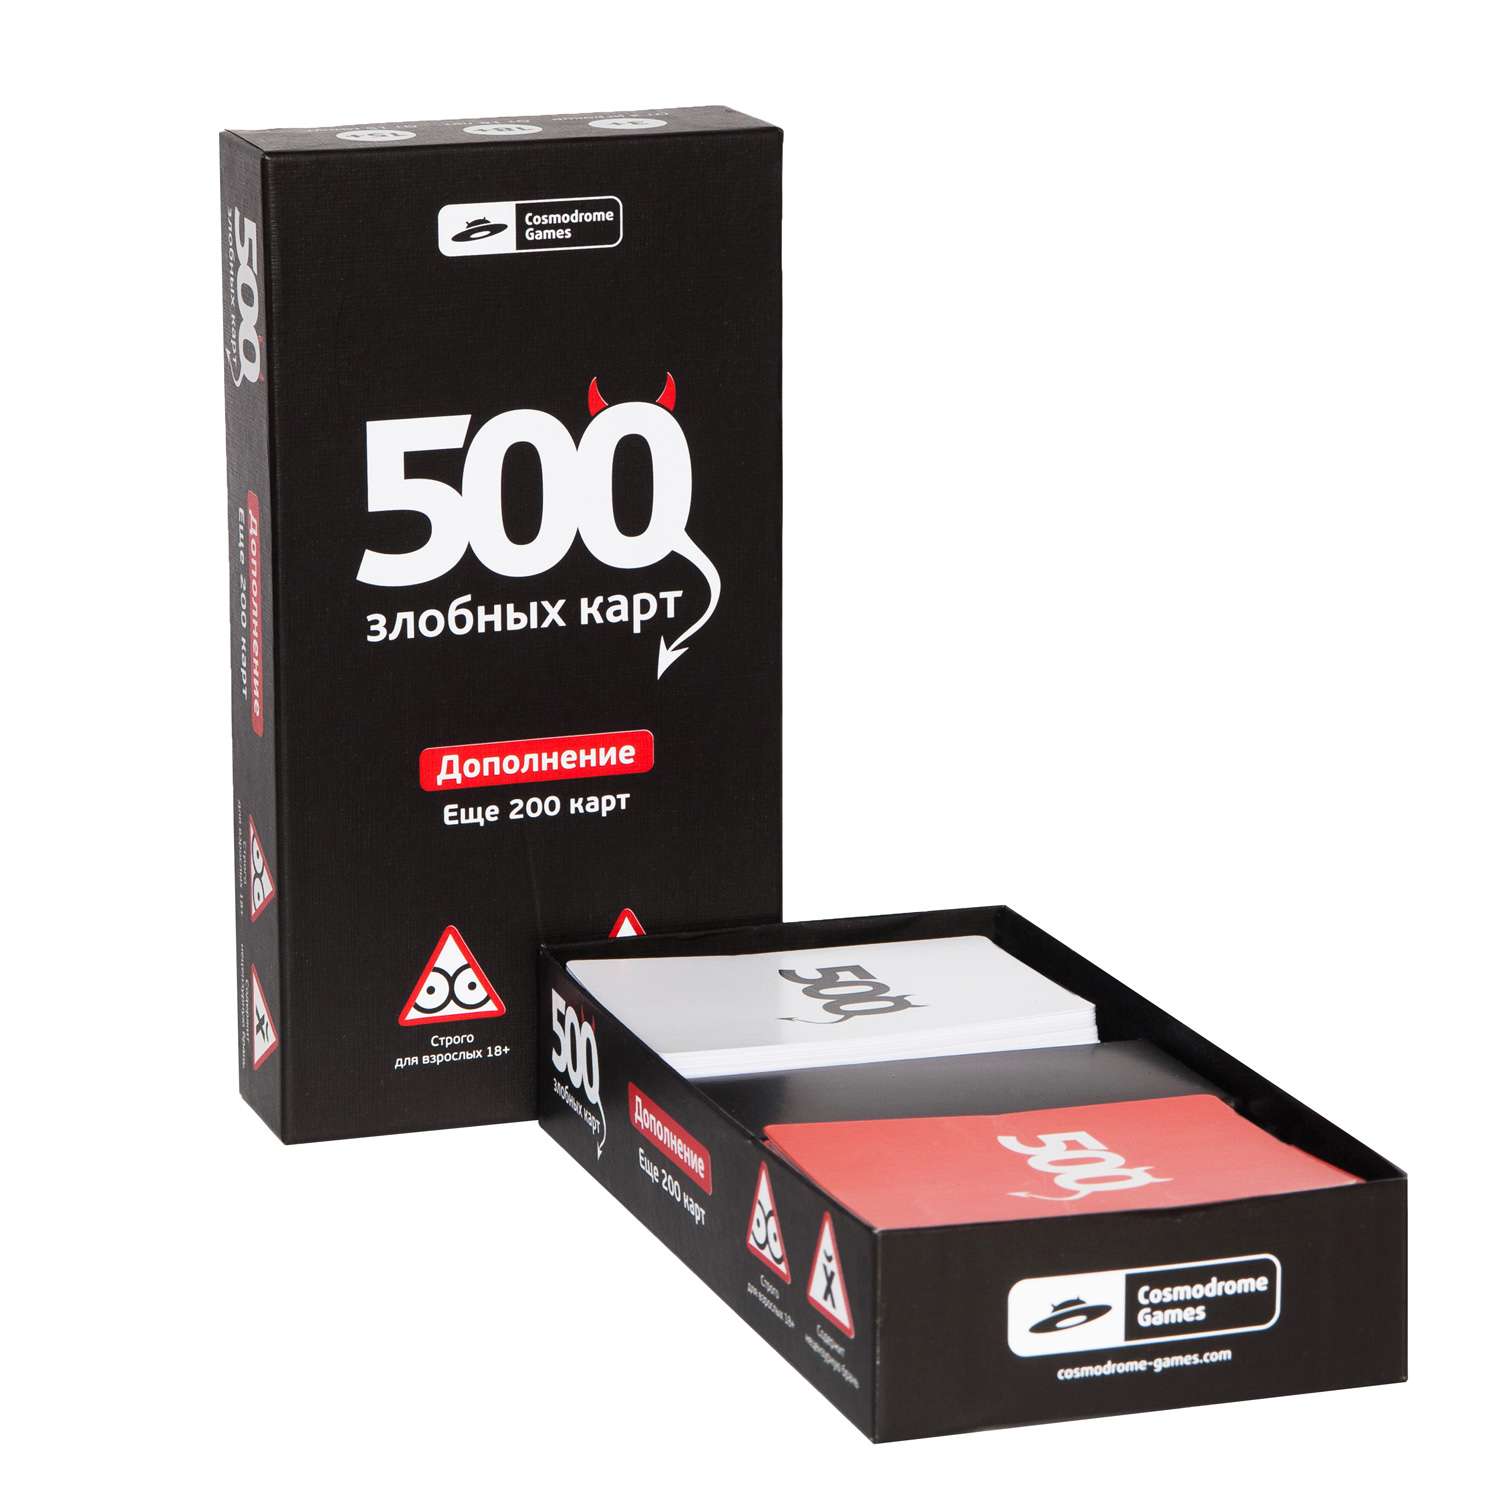 Набор дополнительных карт Cosmodrome Games 500злобных карт Чёрный 52010 - фото 2